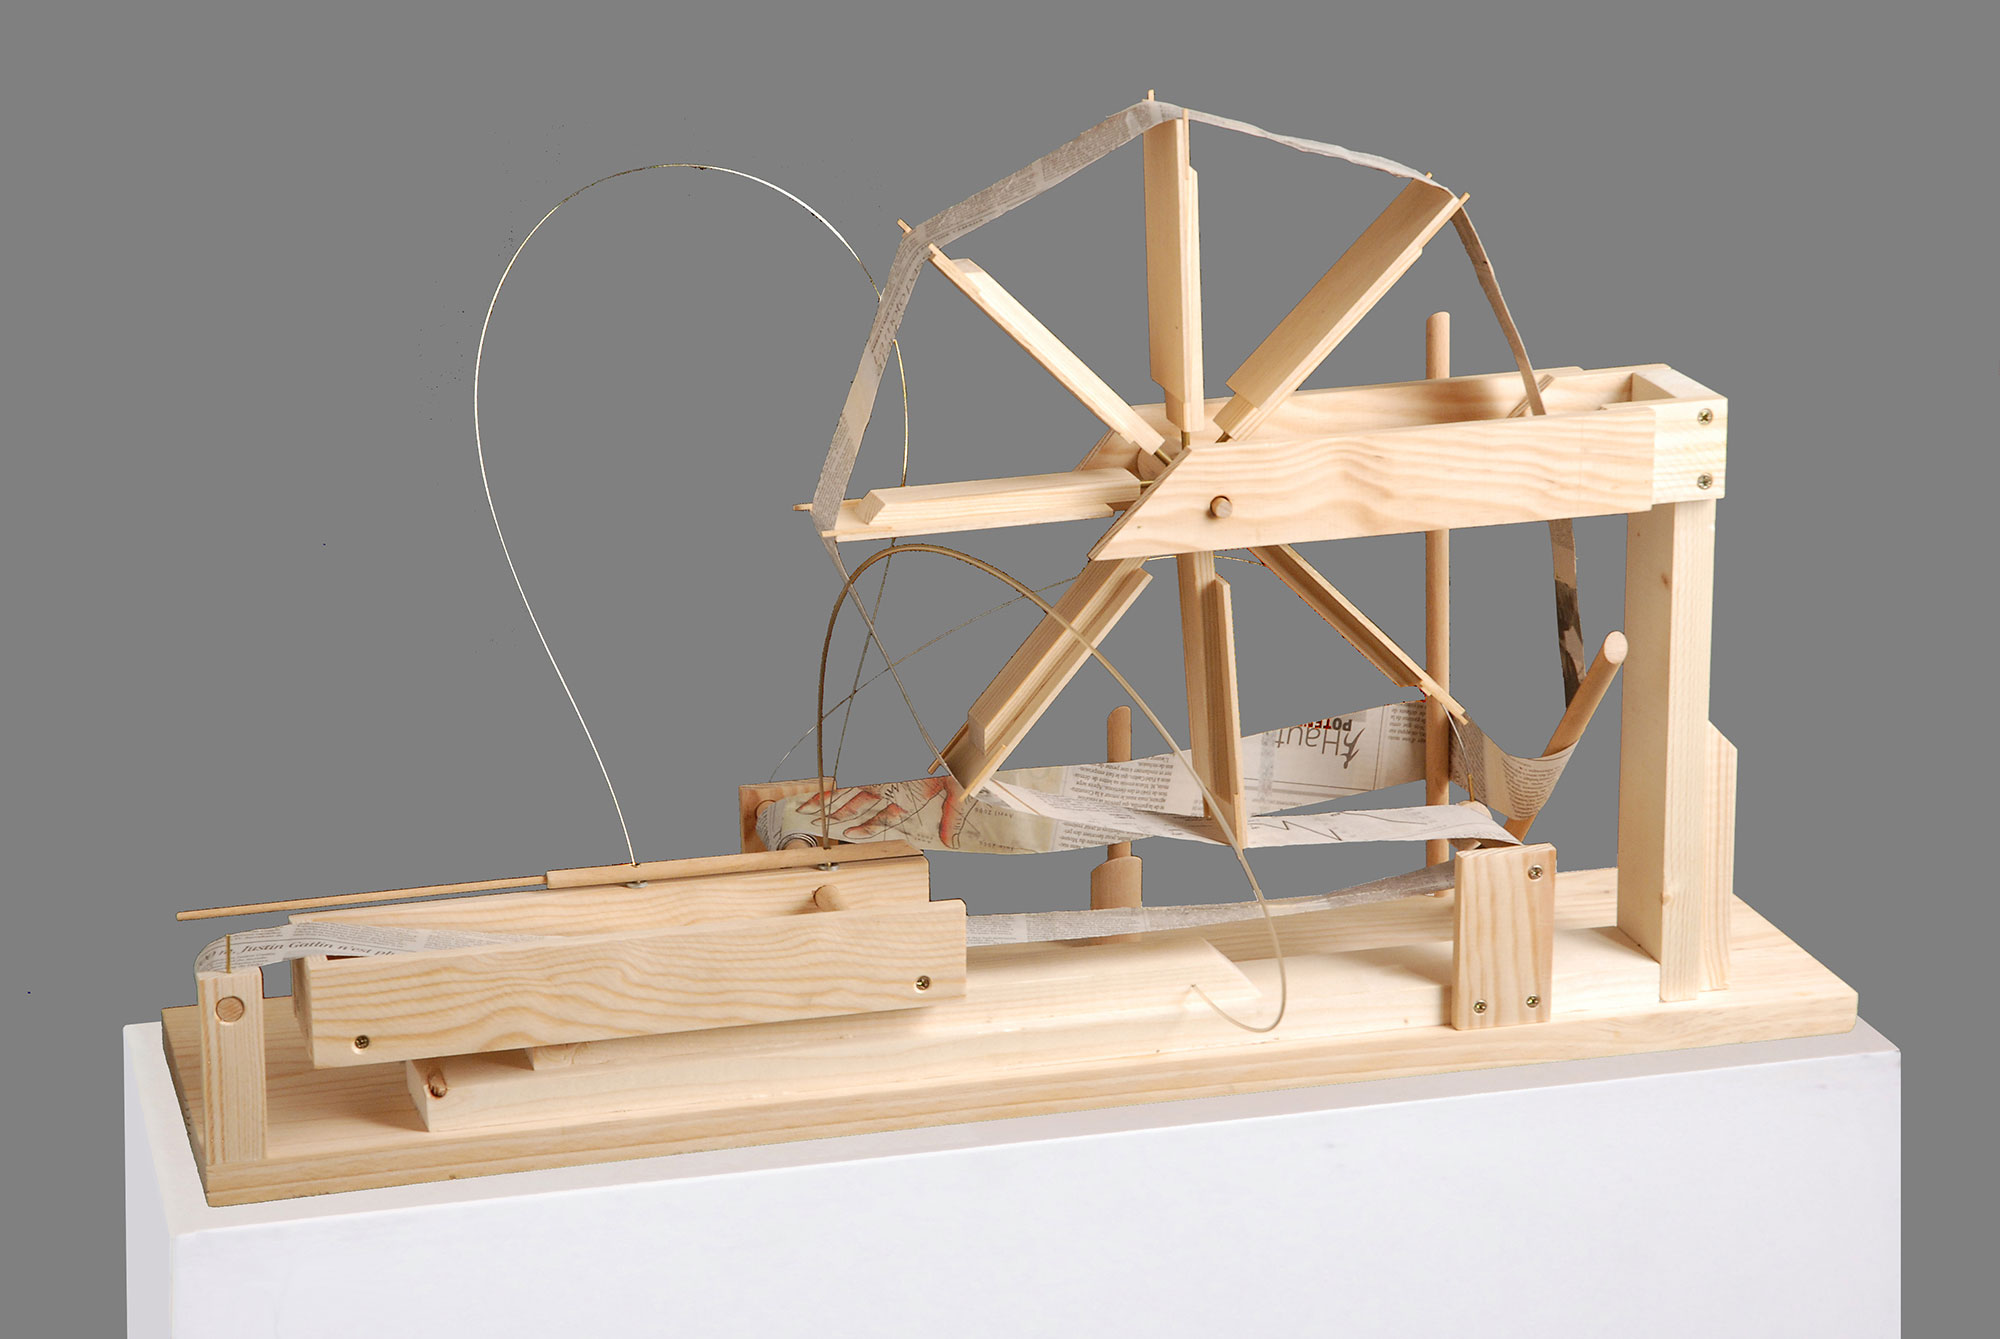 La machine à savoir, 2008, sculpture en bois et métaux, 80x40x48 cm